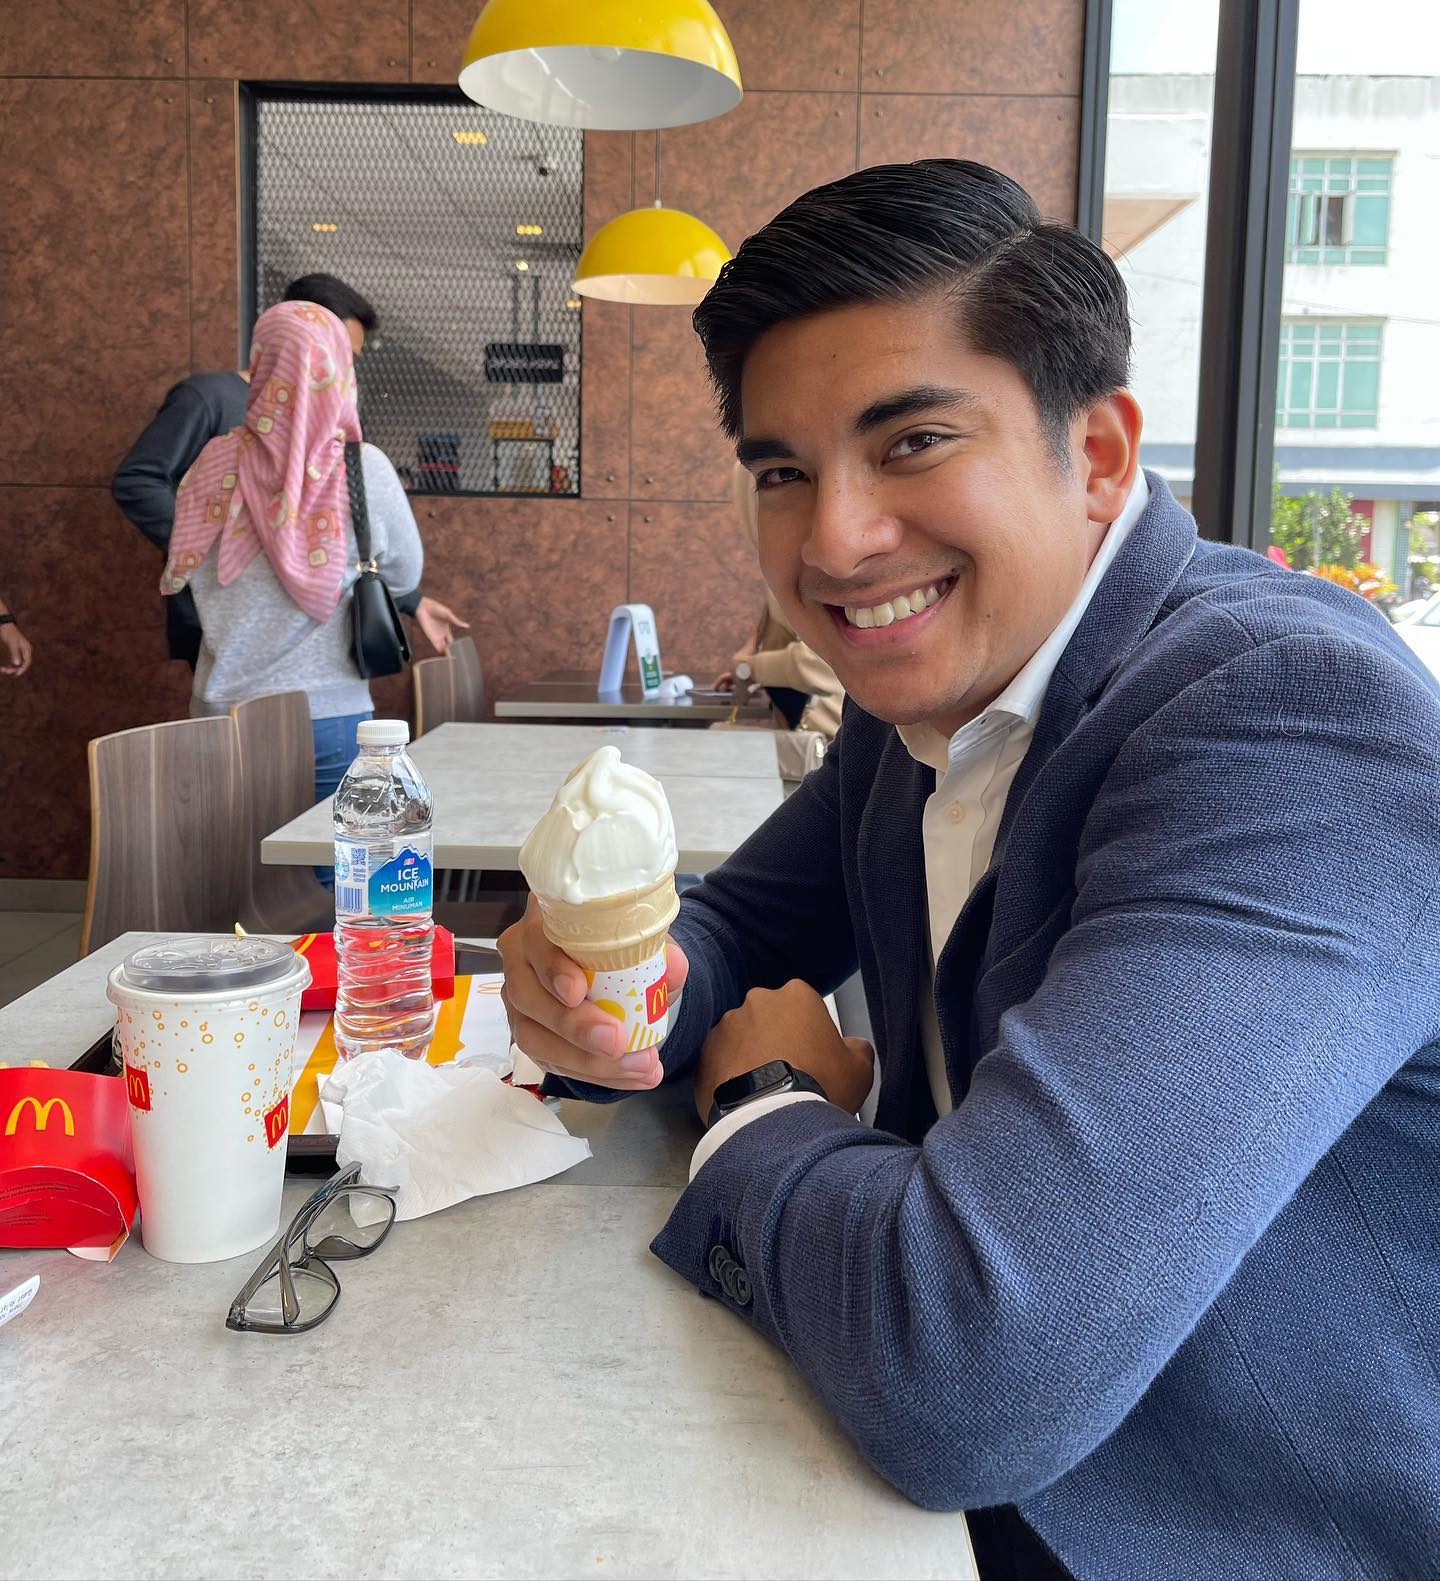 Syed saddiq eating ice cram from mcdonald's